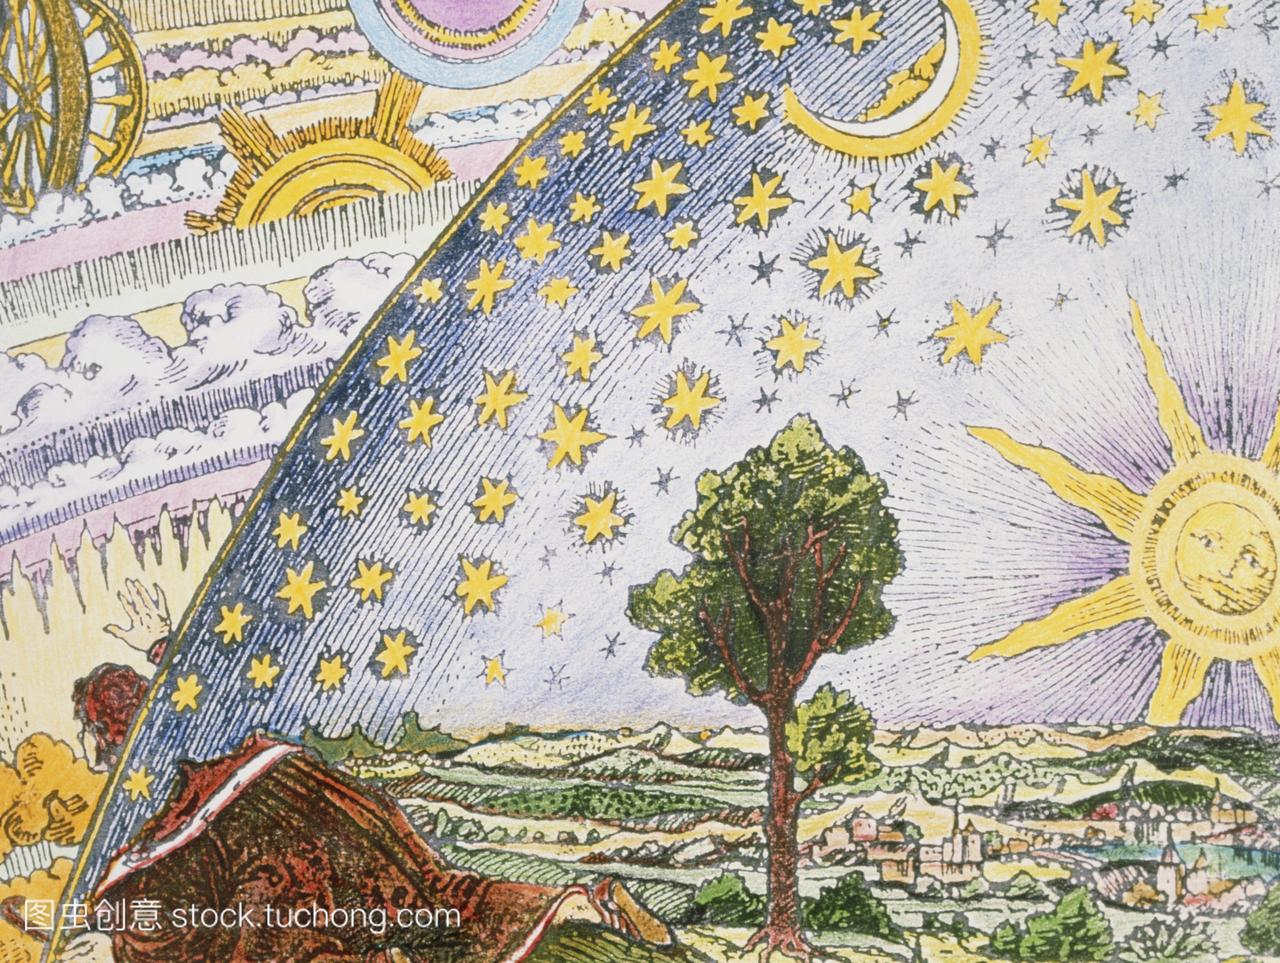 品描绘了一个天文学家从天空蓝色的力学诸天左